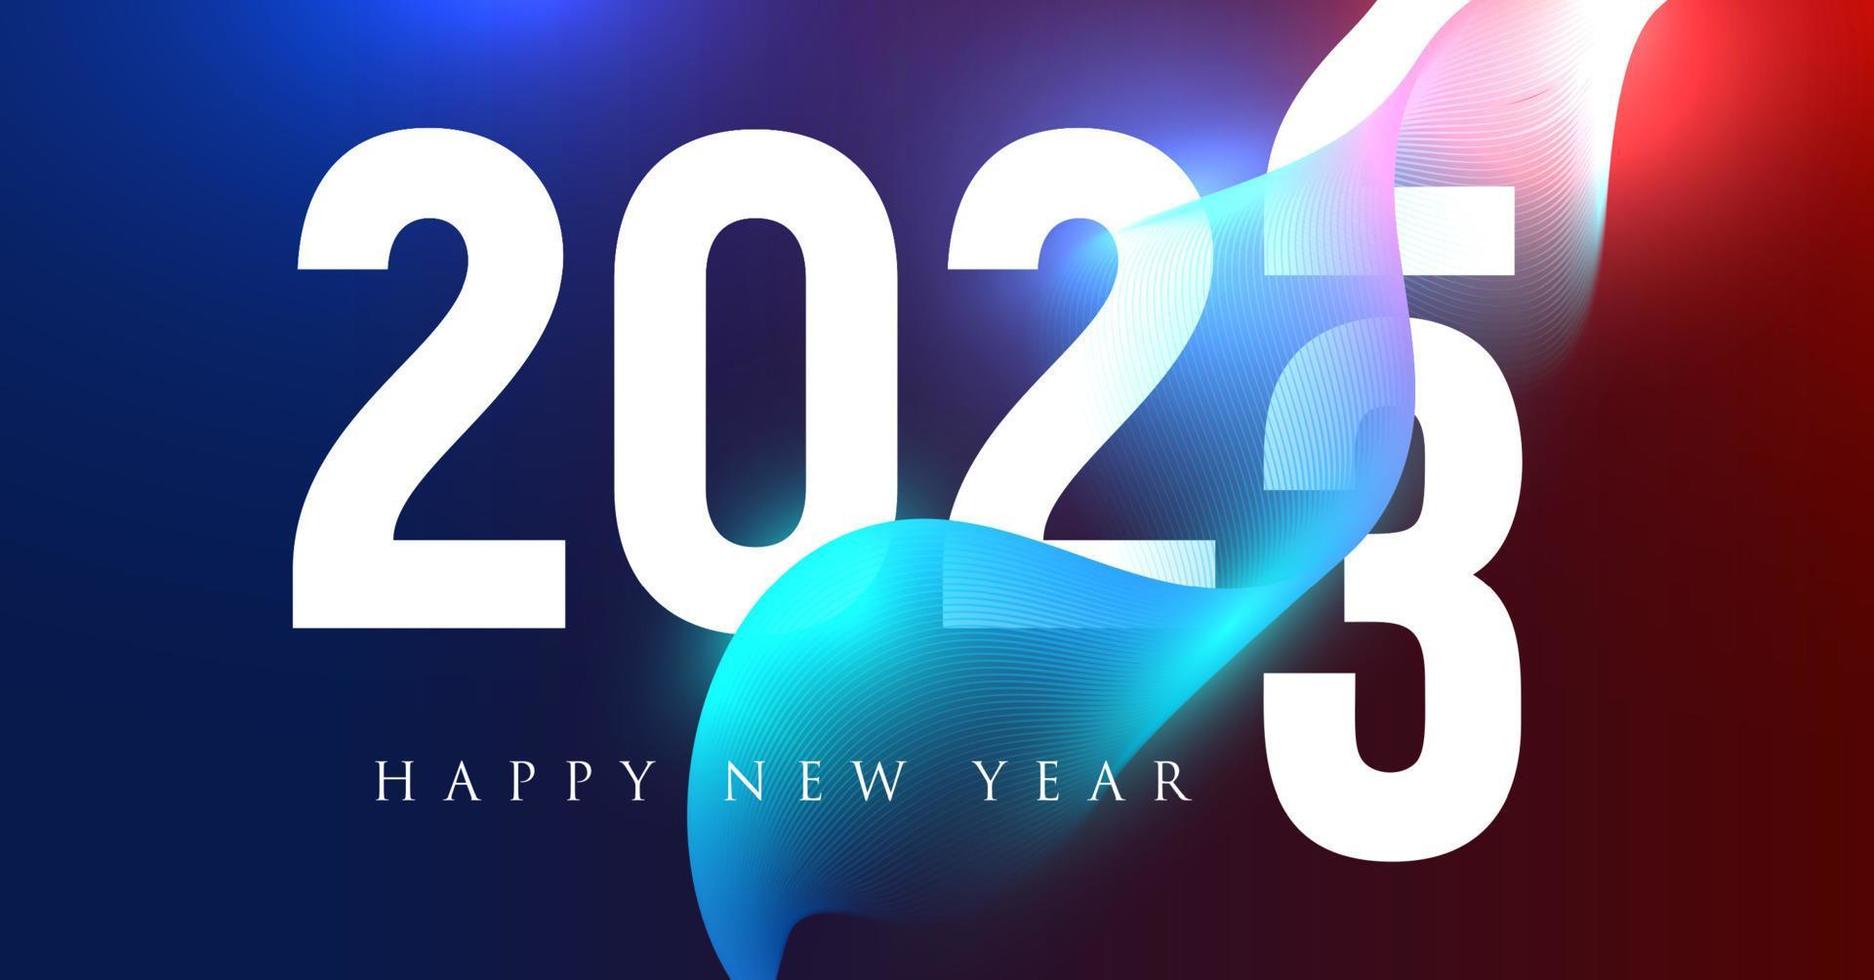 Numéros 2023 dans un style néo-futuriste avec une forme abstraite ondulée pour l'affiche de l'événement, la couverture de la carte de voeux, la conception du calendrier 2023, l'invitation à célébrer le nouvel an et noël. illustration vectorielle. vecteur